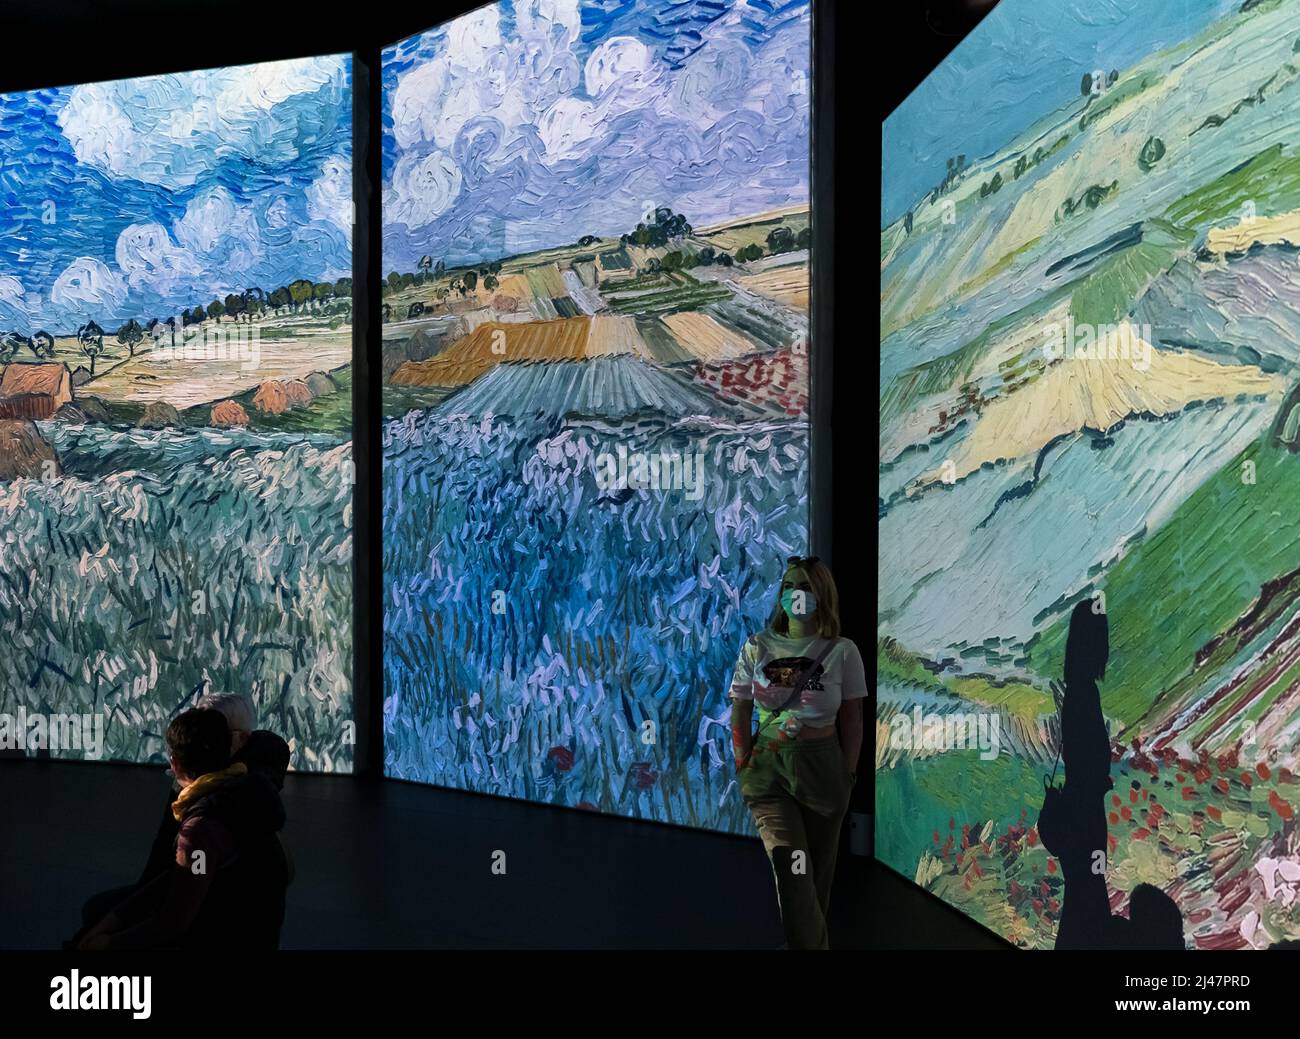 Personnes regardant l'exposition d'art Van Gogh Alive, Édimbourg, Écosse, Royaume-Uni Banque D'Images